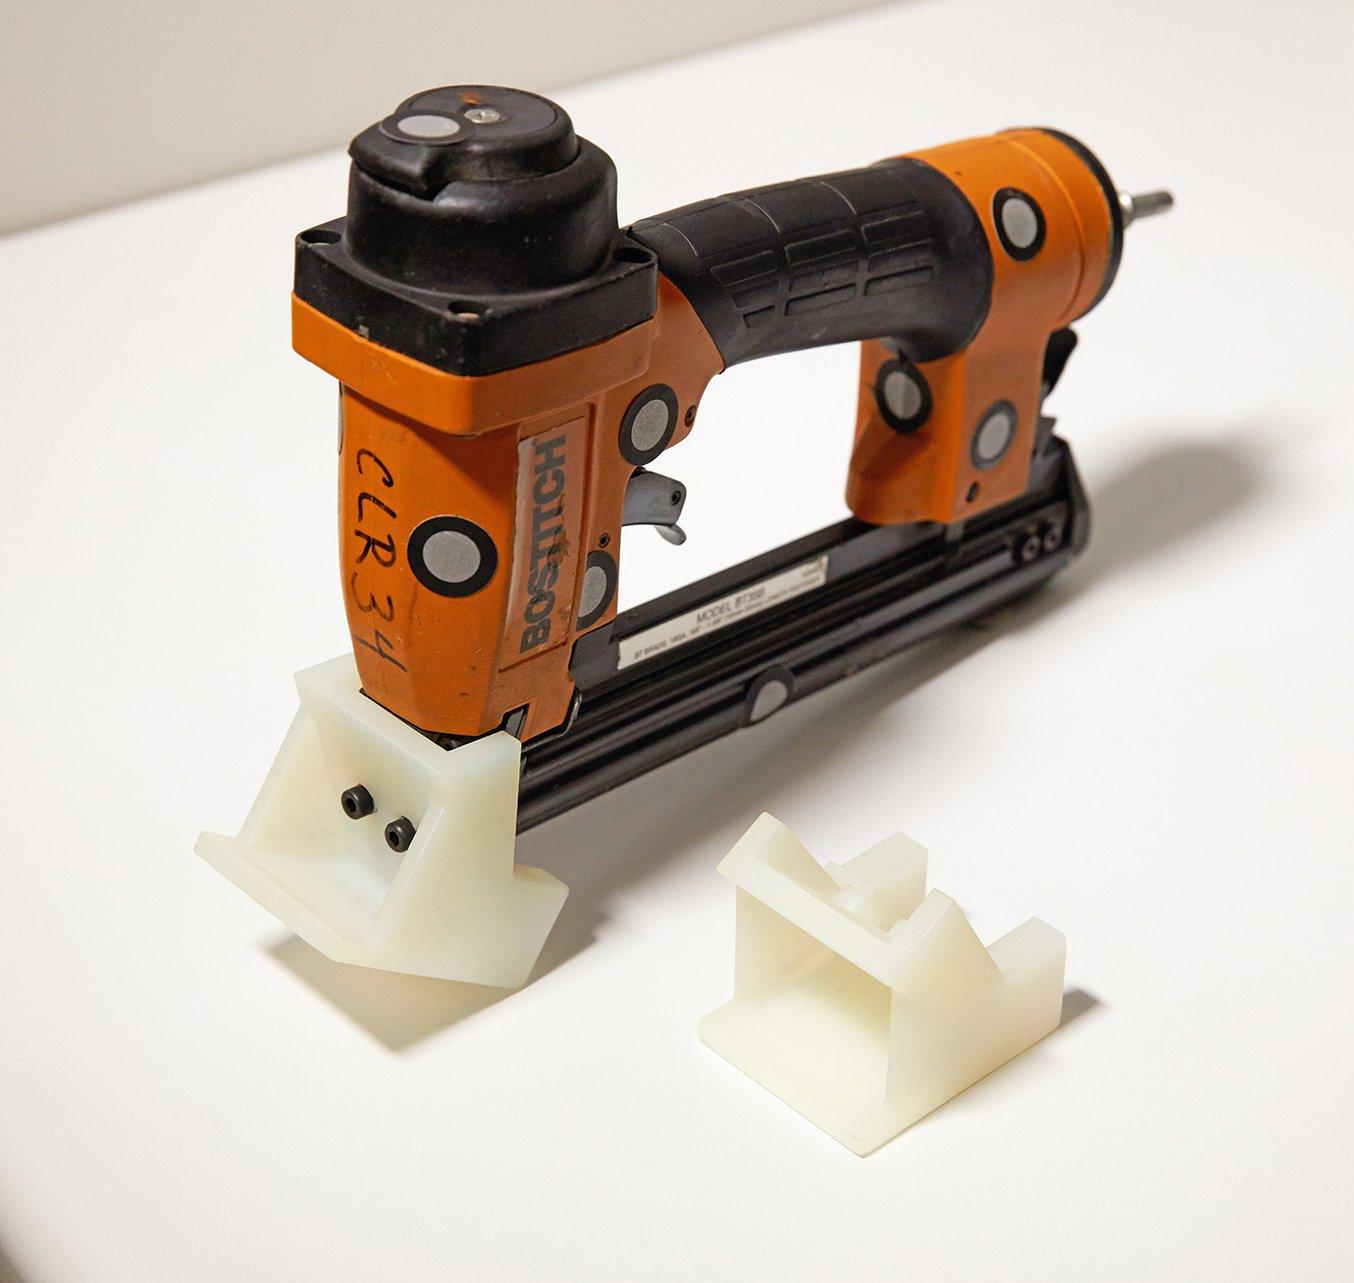 Bei Ashley Furniture haben Produktingenieure angepasste, 3D-gedruckte Werkzeugadapter entwickelt, um sicherzustellen, dass Nägel und Klammern bei Korpusmöbeln immer an derselben Stelle sitzen. Der hier abgebildete Werkezeugadapter besteht aus Durable Resin